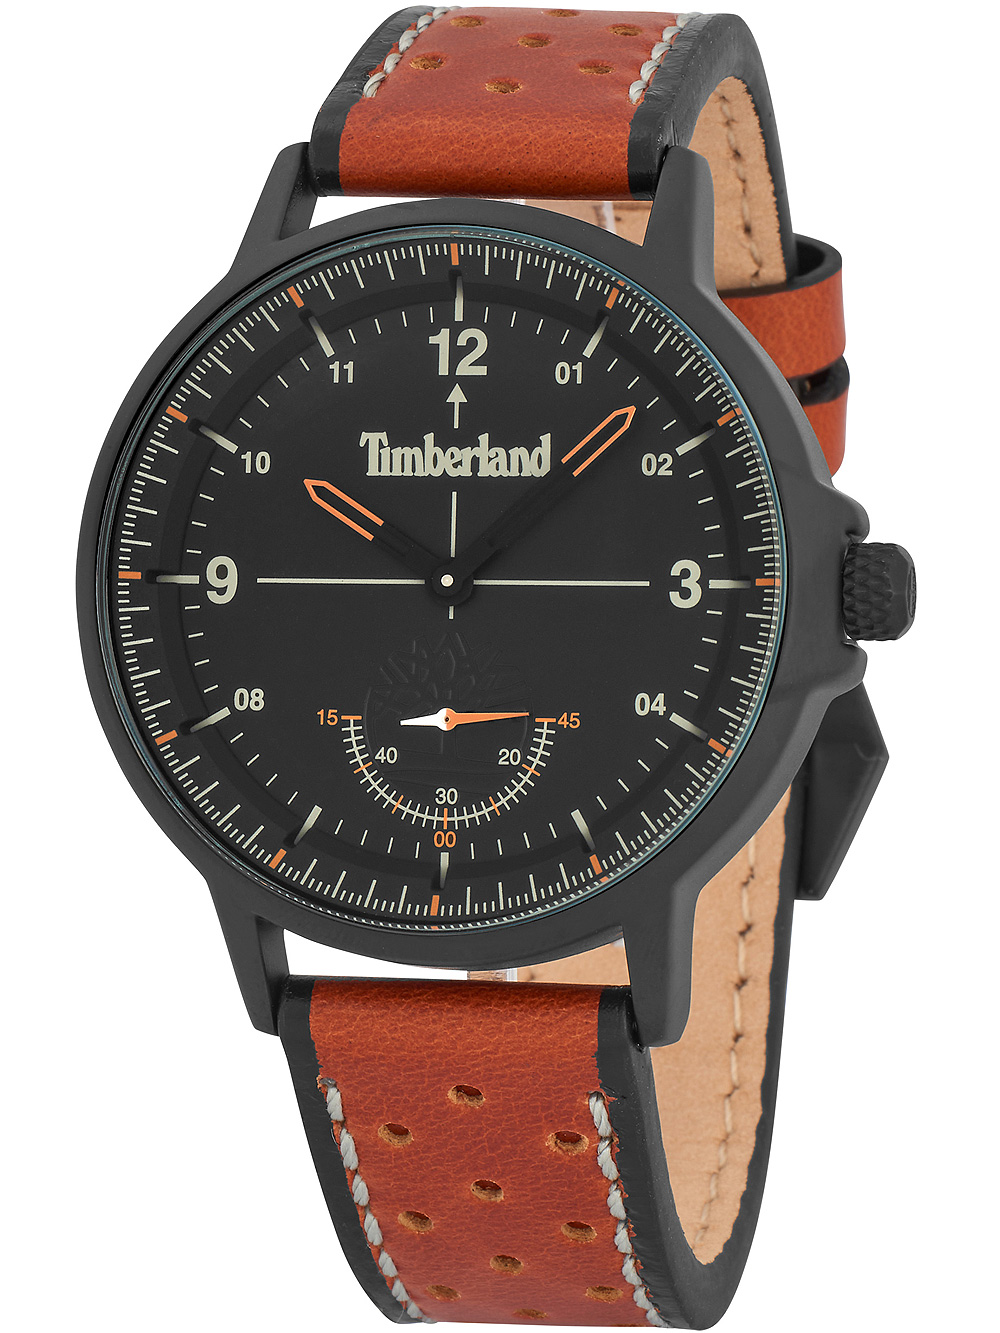 Pánské hodinky Timberland TBL15943JYB.02 Parkridge